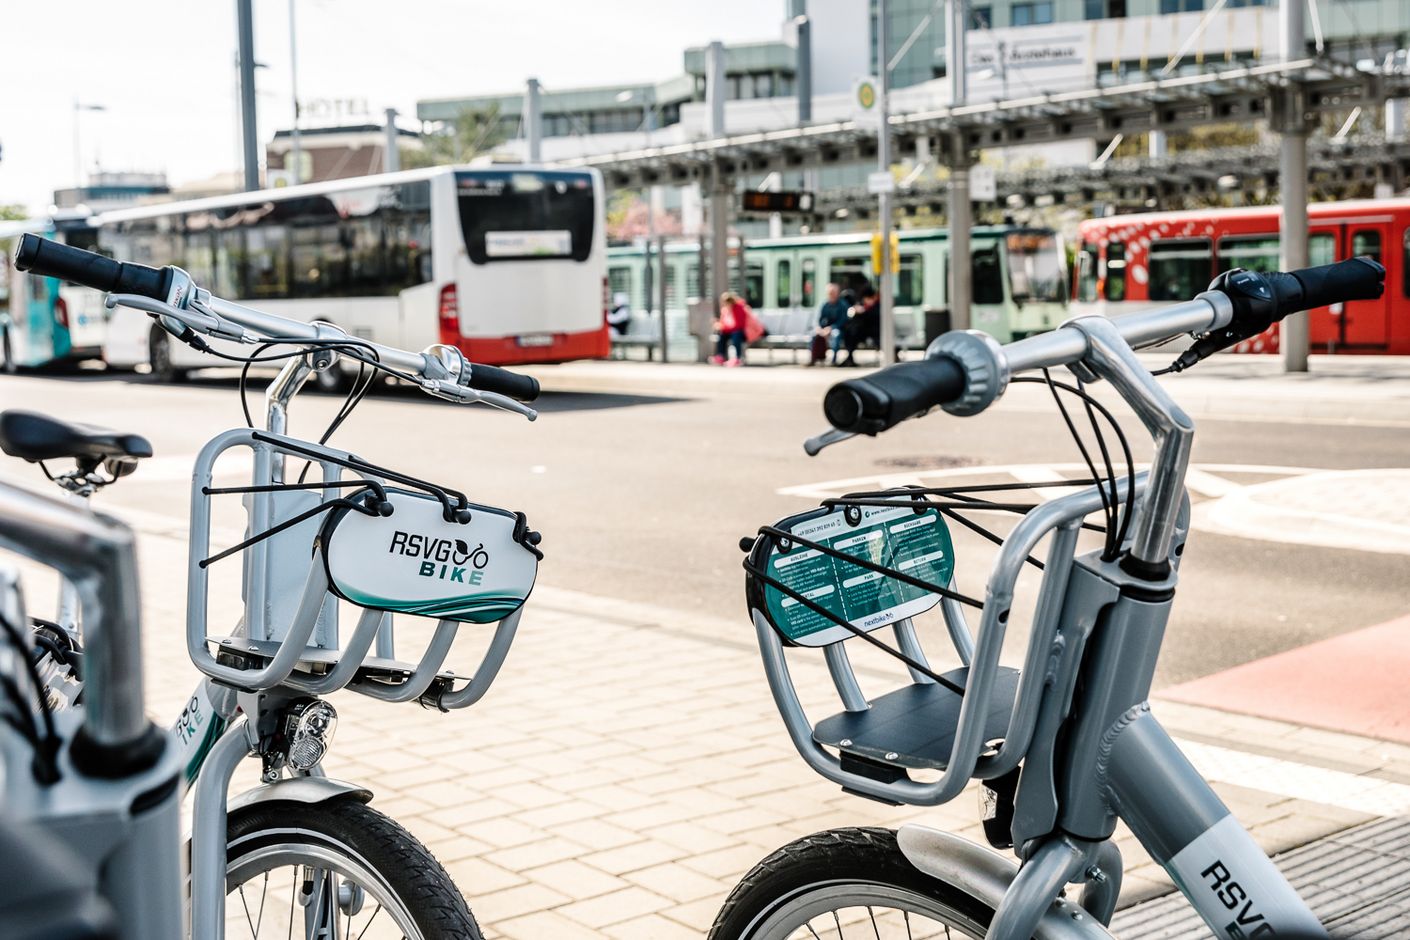 Die Mobilstation St. Augustin bietet Bahnreisenden u.a. Bus- und Bike-Anschluss.